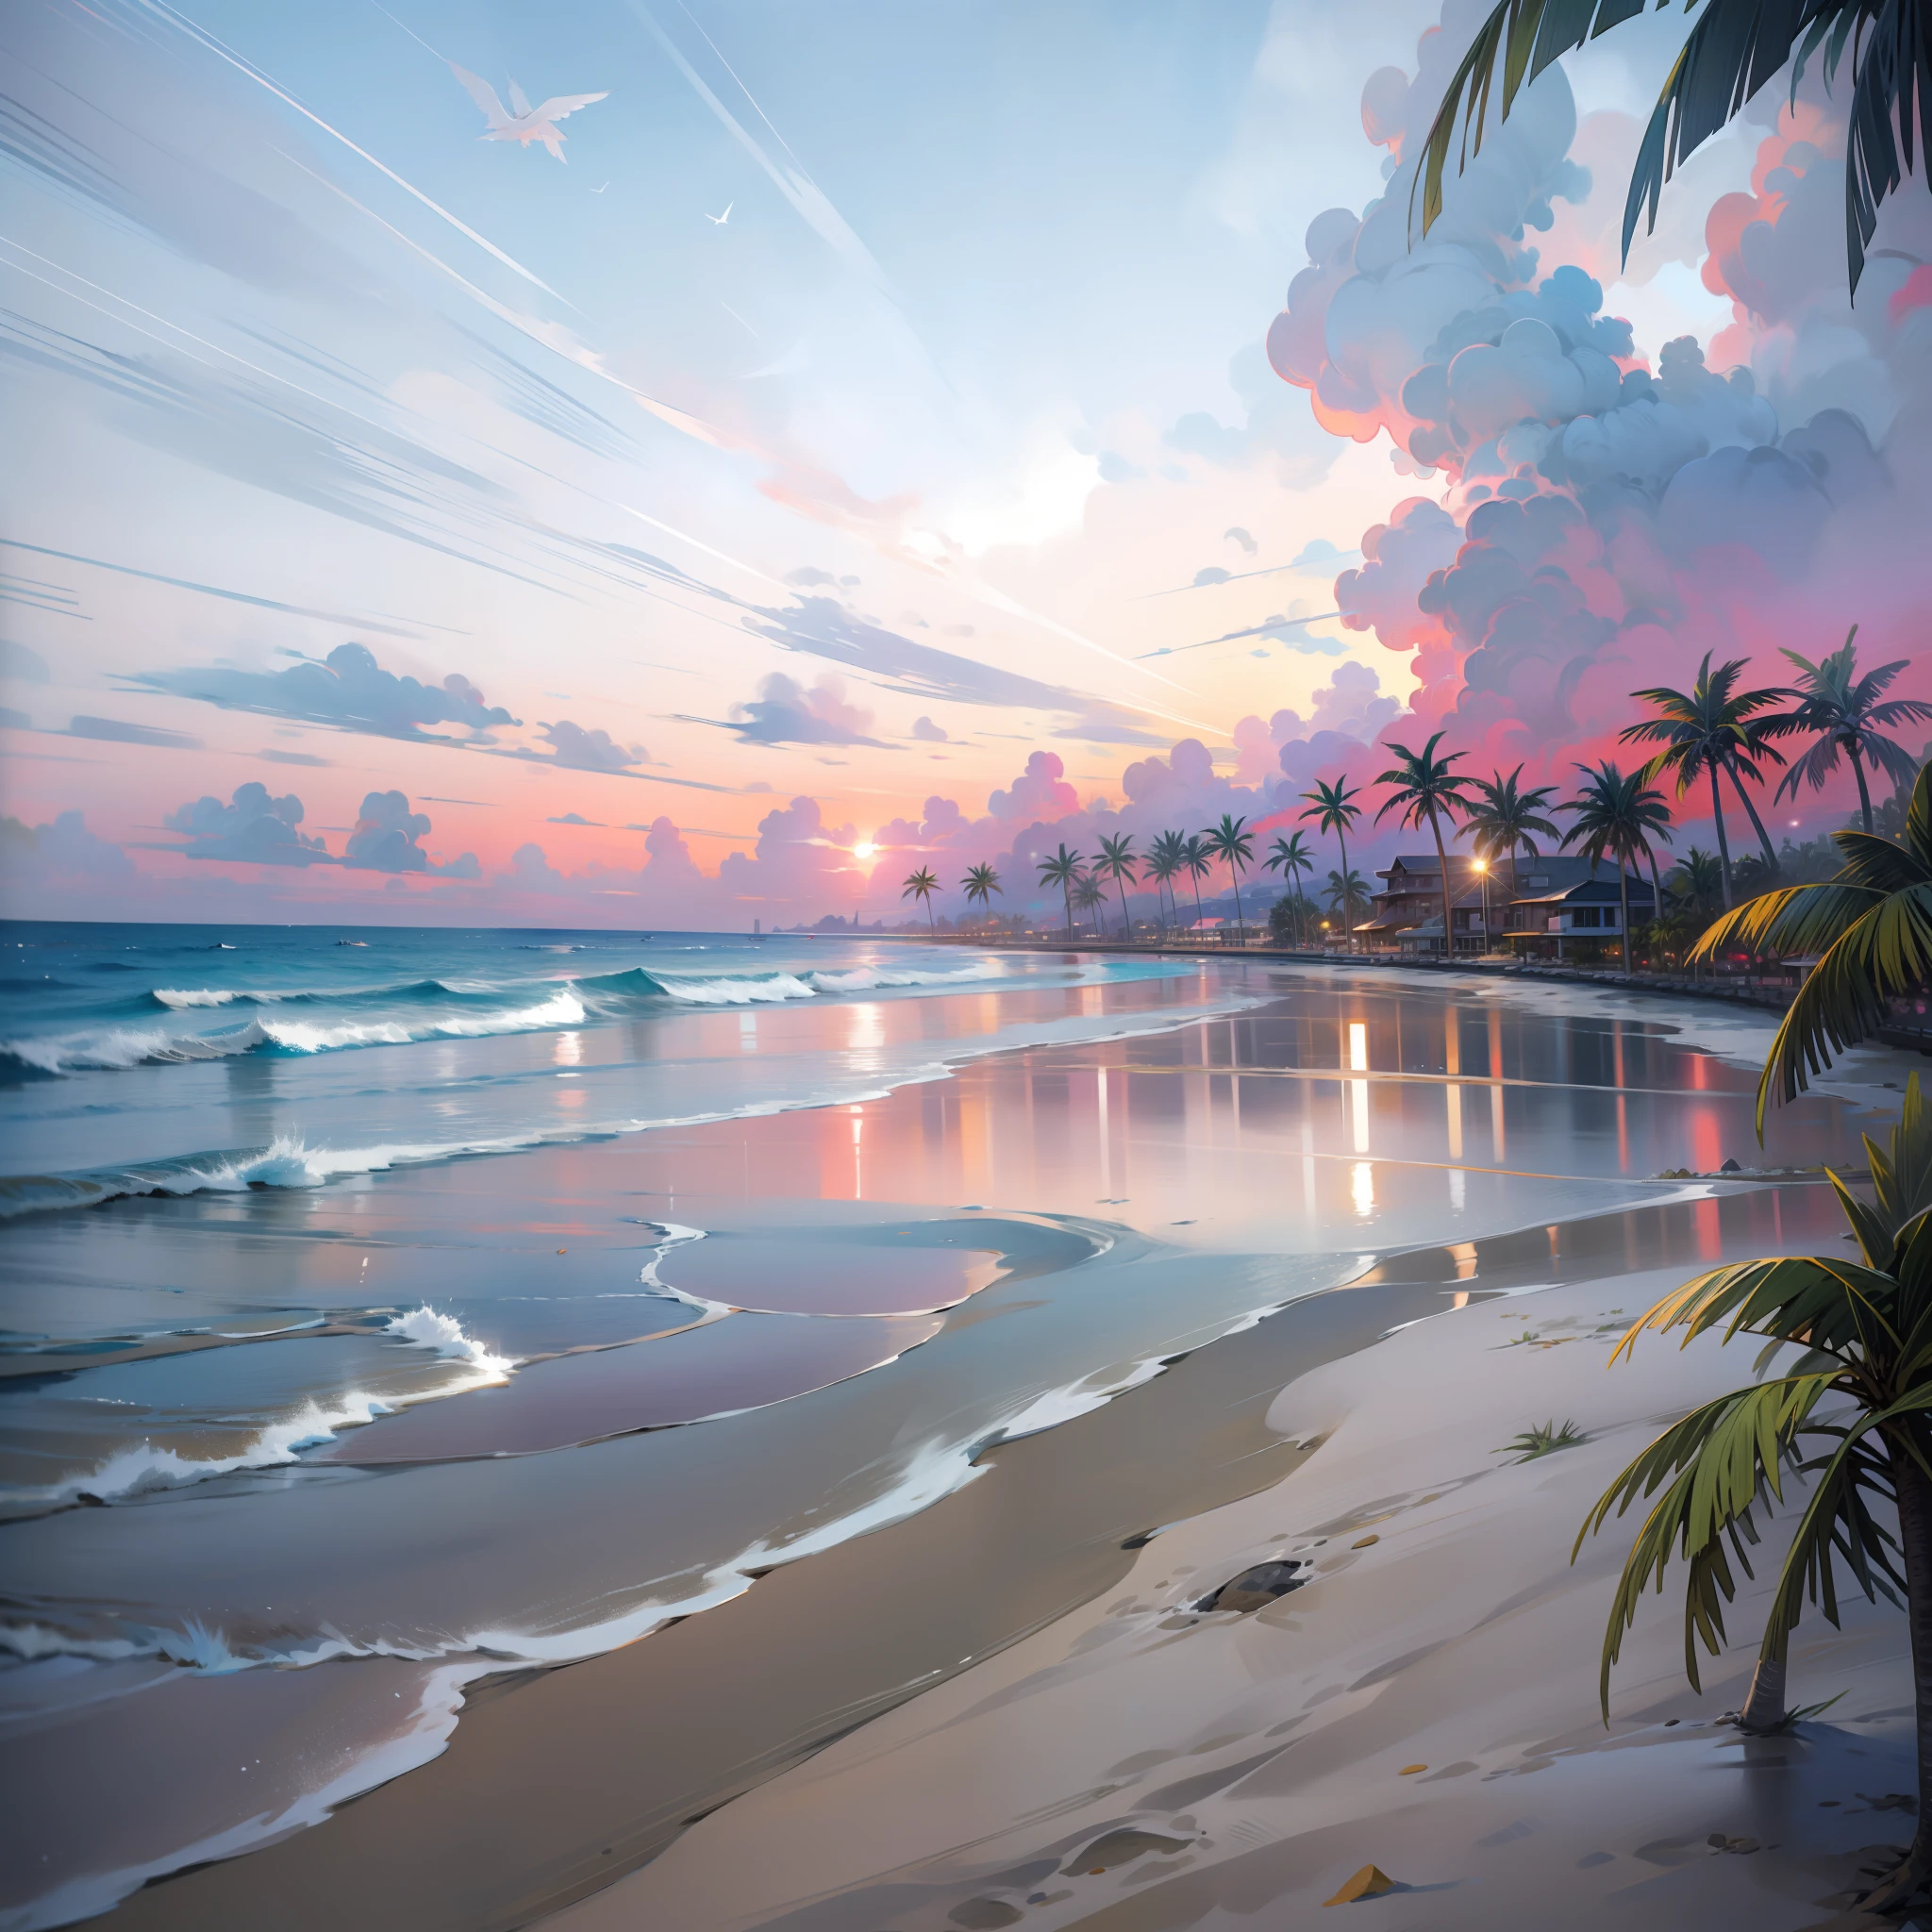 海灘上的日落絕對令人著迷，橙色的混合, 天空中的粉紅色和黃色. 水清澈見底, 輕輕地親吻海岸, 白色的沙灘一望無際. 場面動感十足，令人嘆為觀止, 海鷗在高空翱翔，棕櫚樹輕輕搖曳. 沉浸在平靜的氛圍中，讓寧靜籠罩.